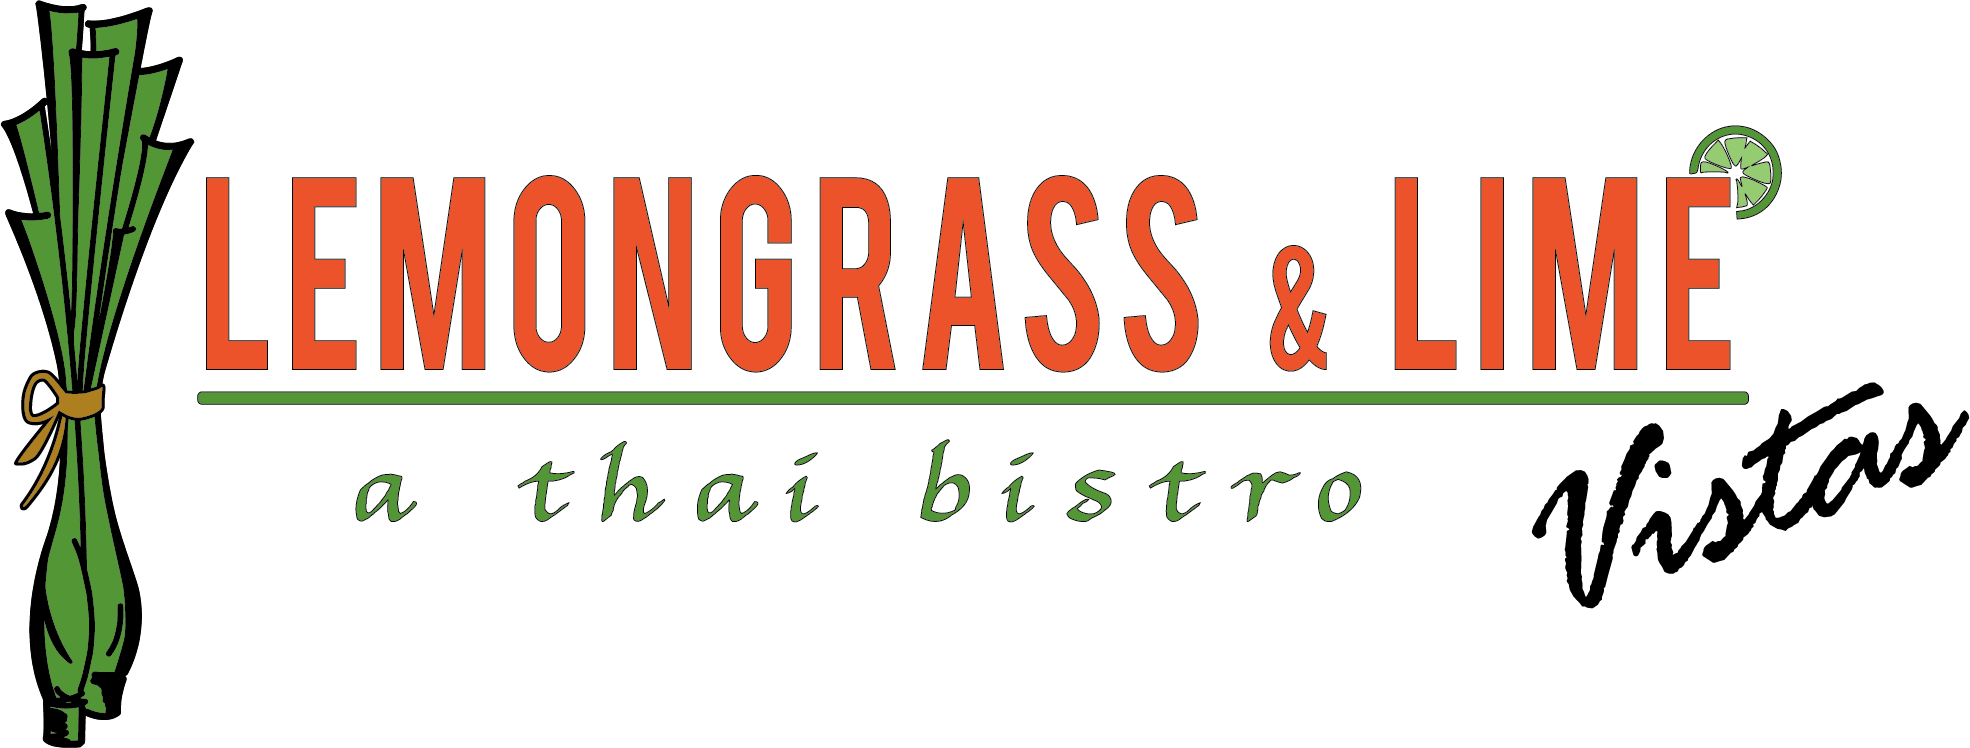 Lemongrass & Lime Vistas